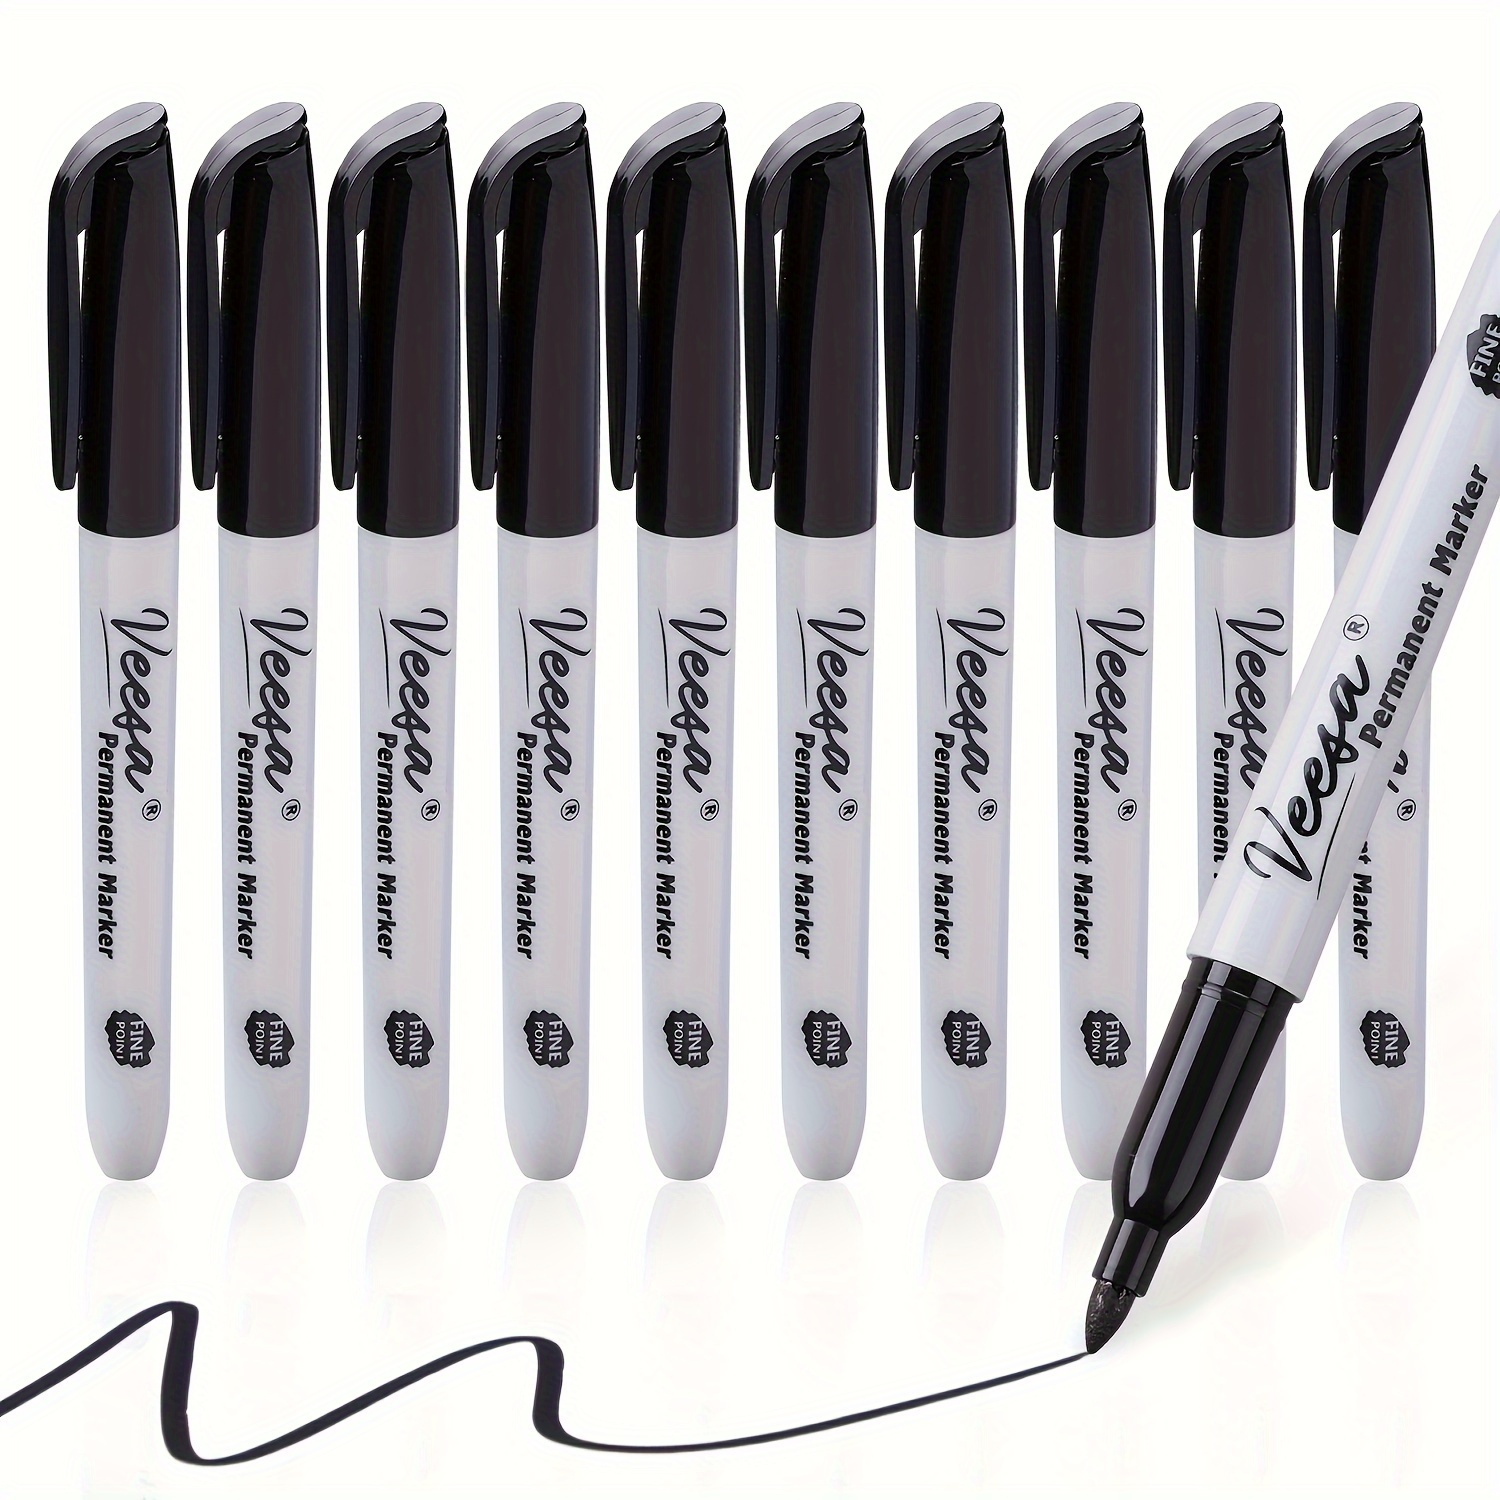 Sharpie Fine Tip Permanent Marker Value Pack with (1) Bonus S-Gel 0.7 mm Black Ink Pen, Fine Bullet Tip Markers, Black Ink, 36/Pack